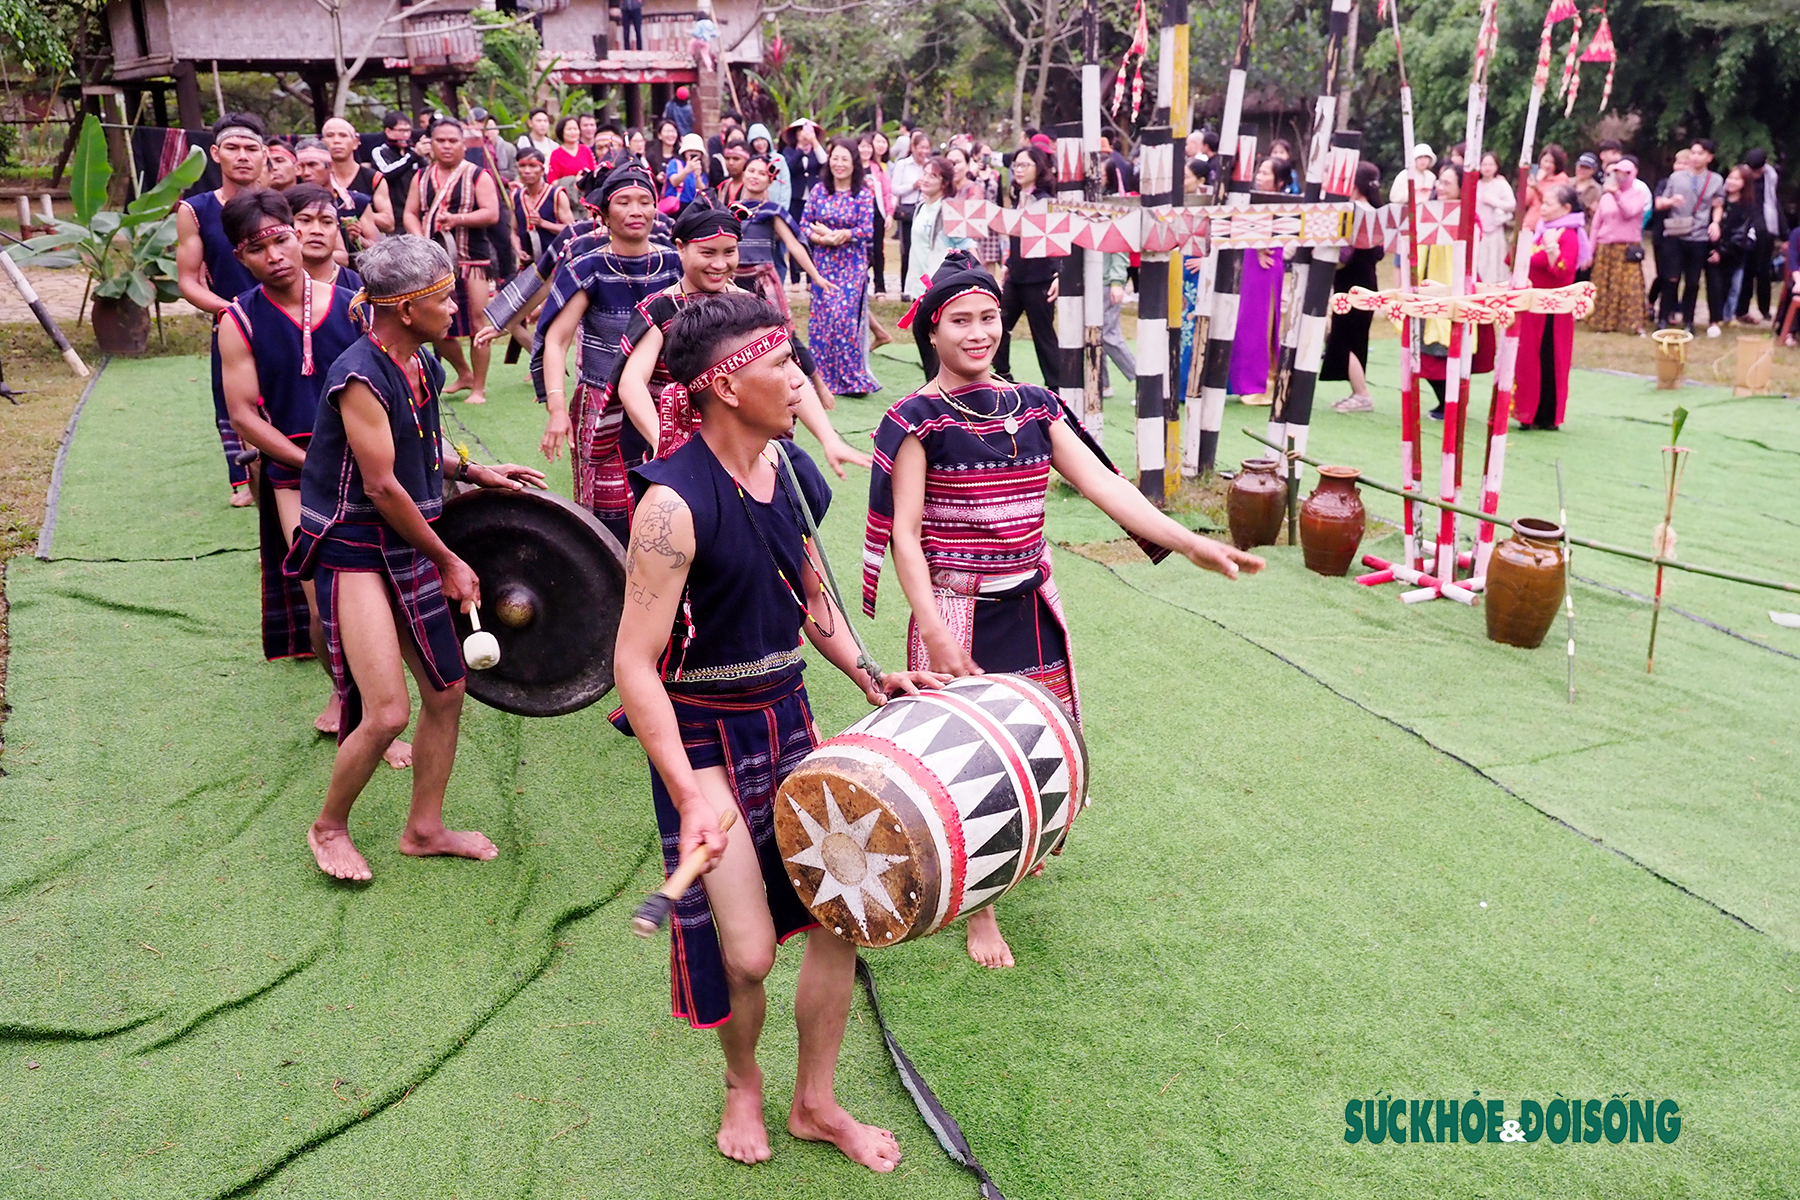 Sáng 26/3, tại không gian làng Văn hóa các Dân tộc Việt Nam, đồng bào người Ba Na (Tỉnh Gia Lai) đã tái hiện lễ Cầu an, đặc biệt trong lễ hội có nghi thức cúng cồng chiêng.